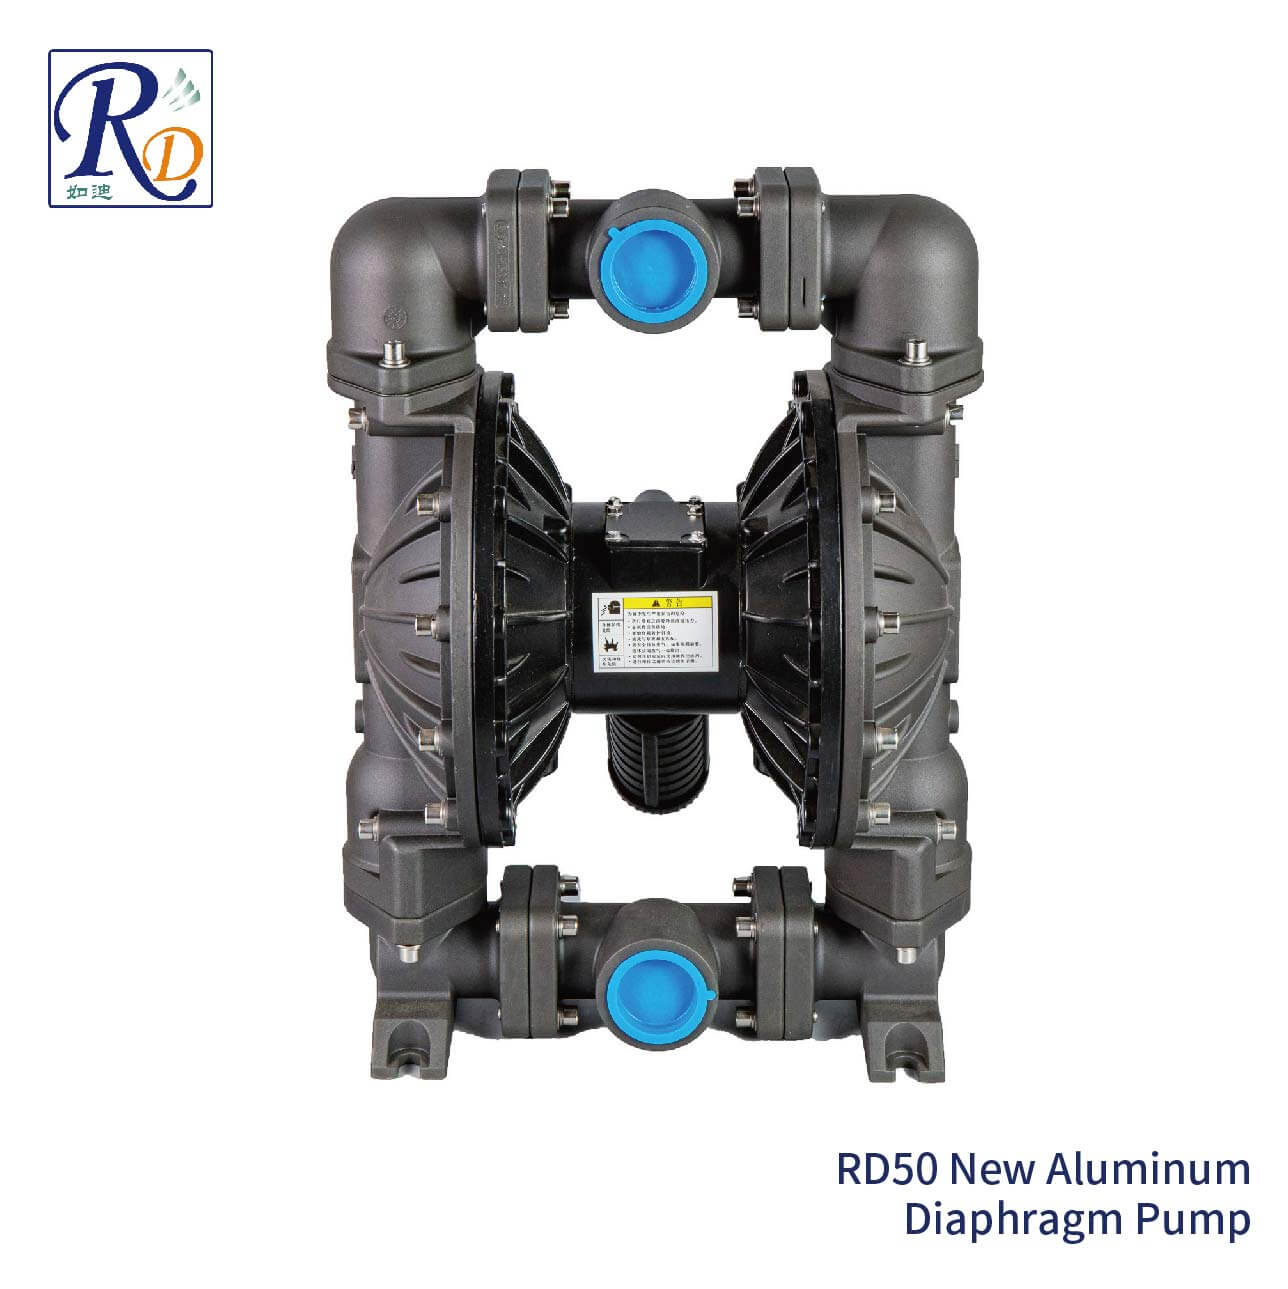 RD50 New Aluminum Diaphragm Pump